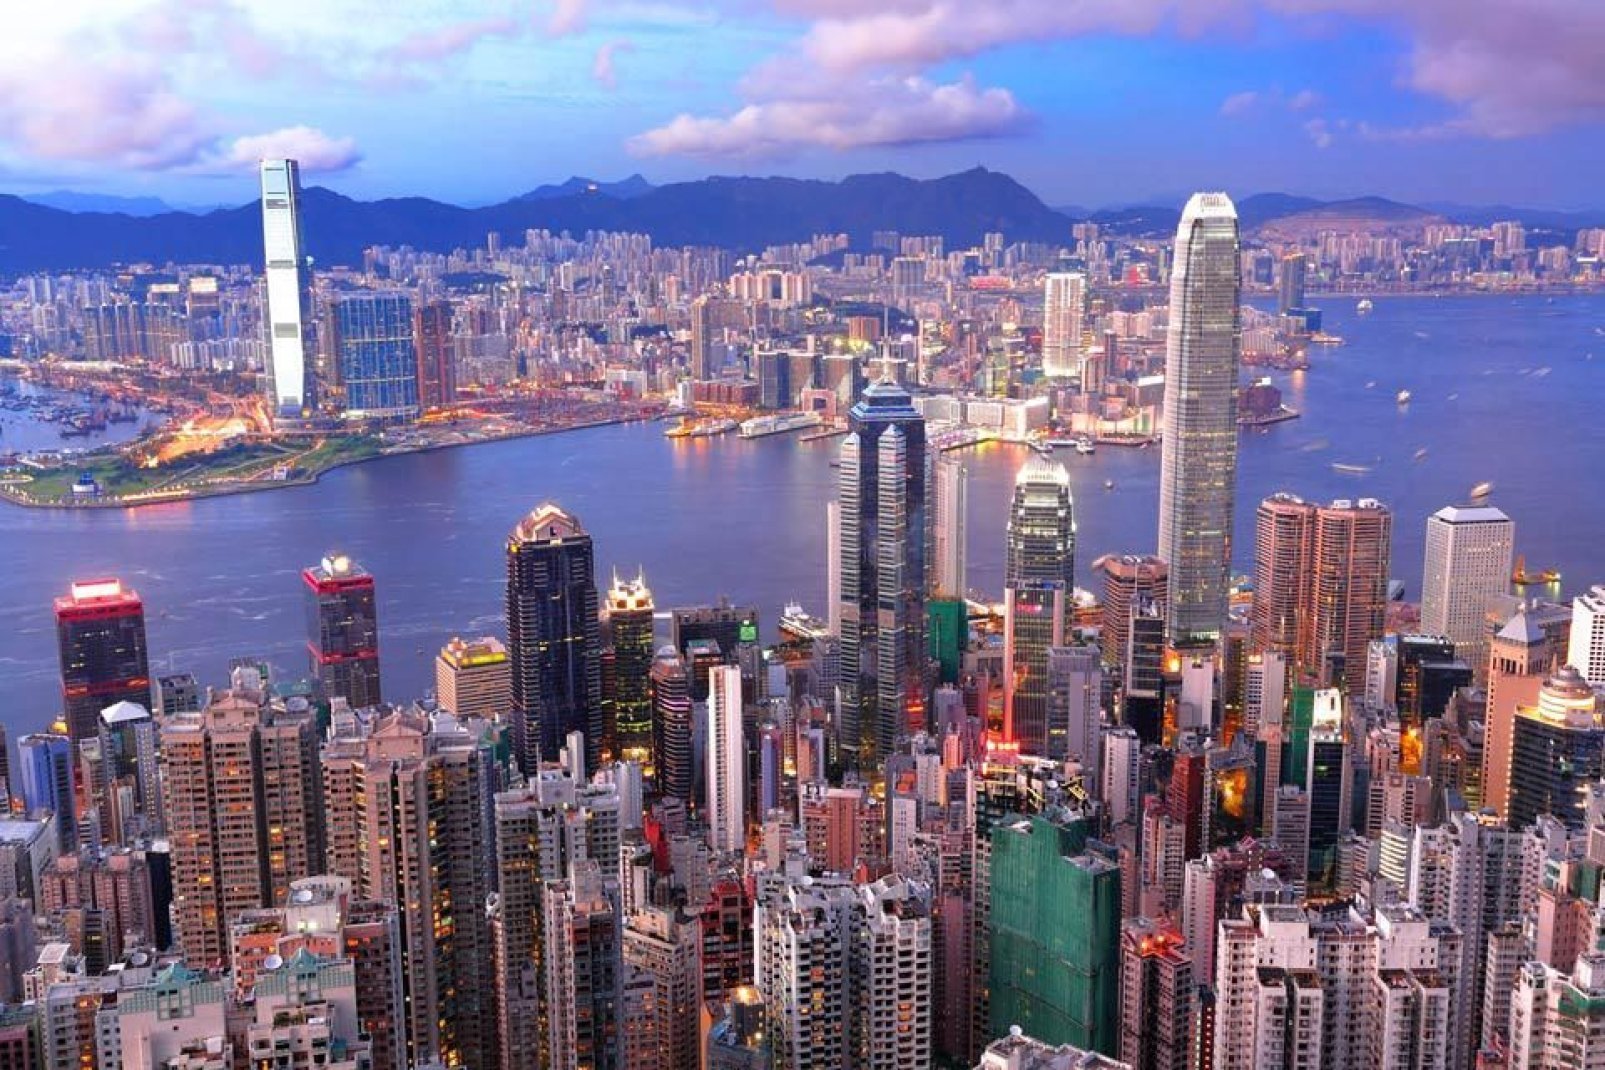 Hong Kong è nota per i suoi grattacieli, la verticalità degli edifici da vita ad un paesaggio urbano molto particolare.